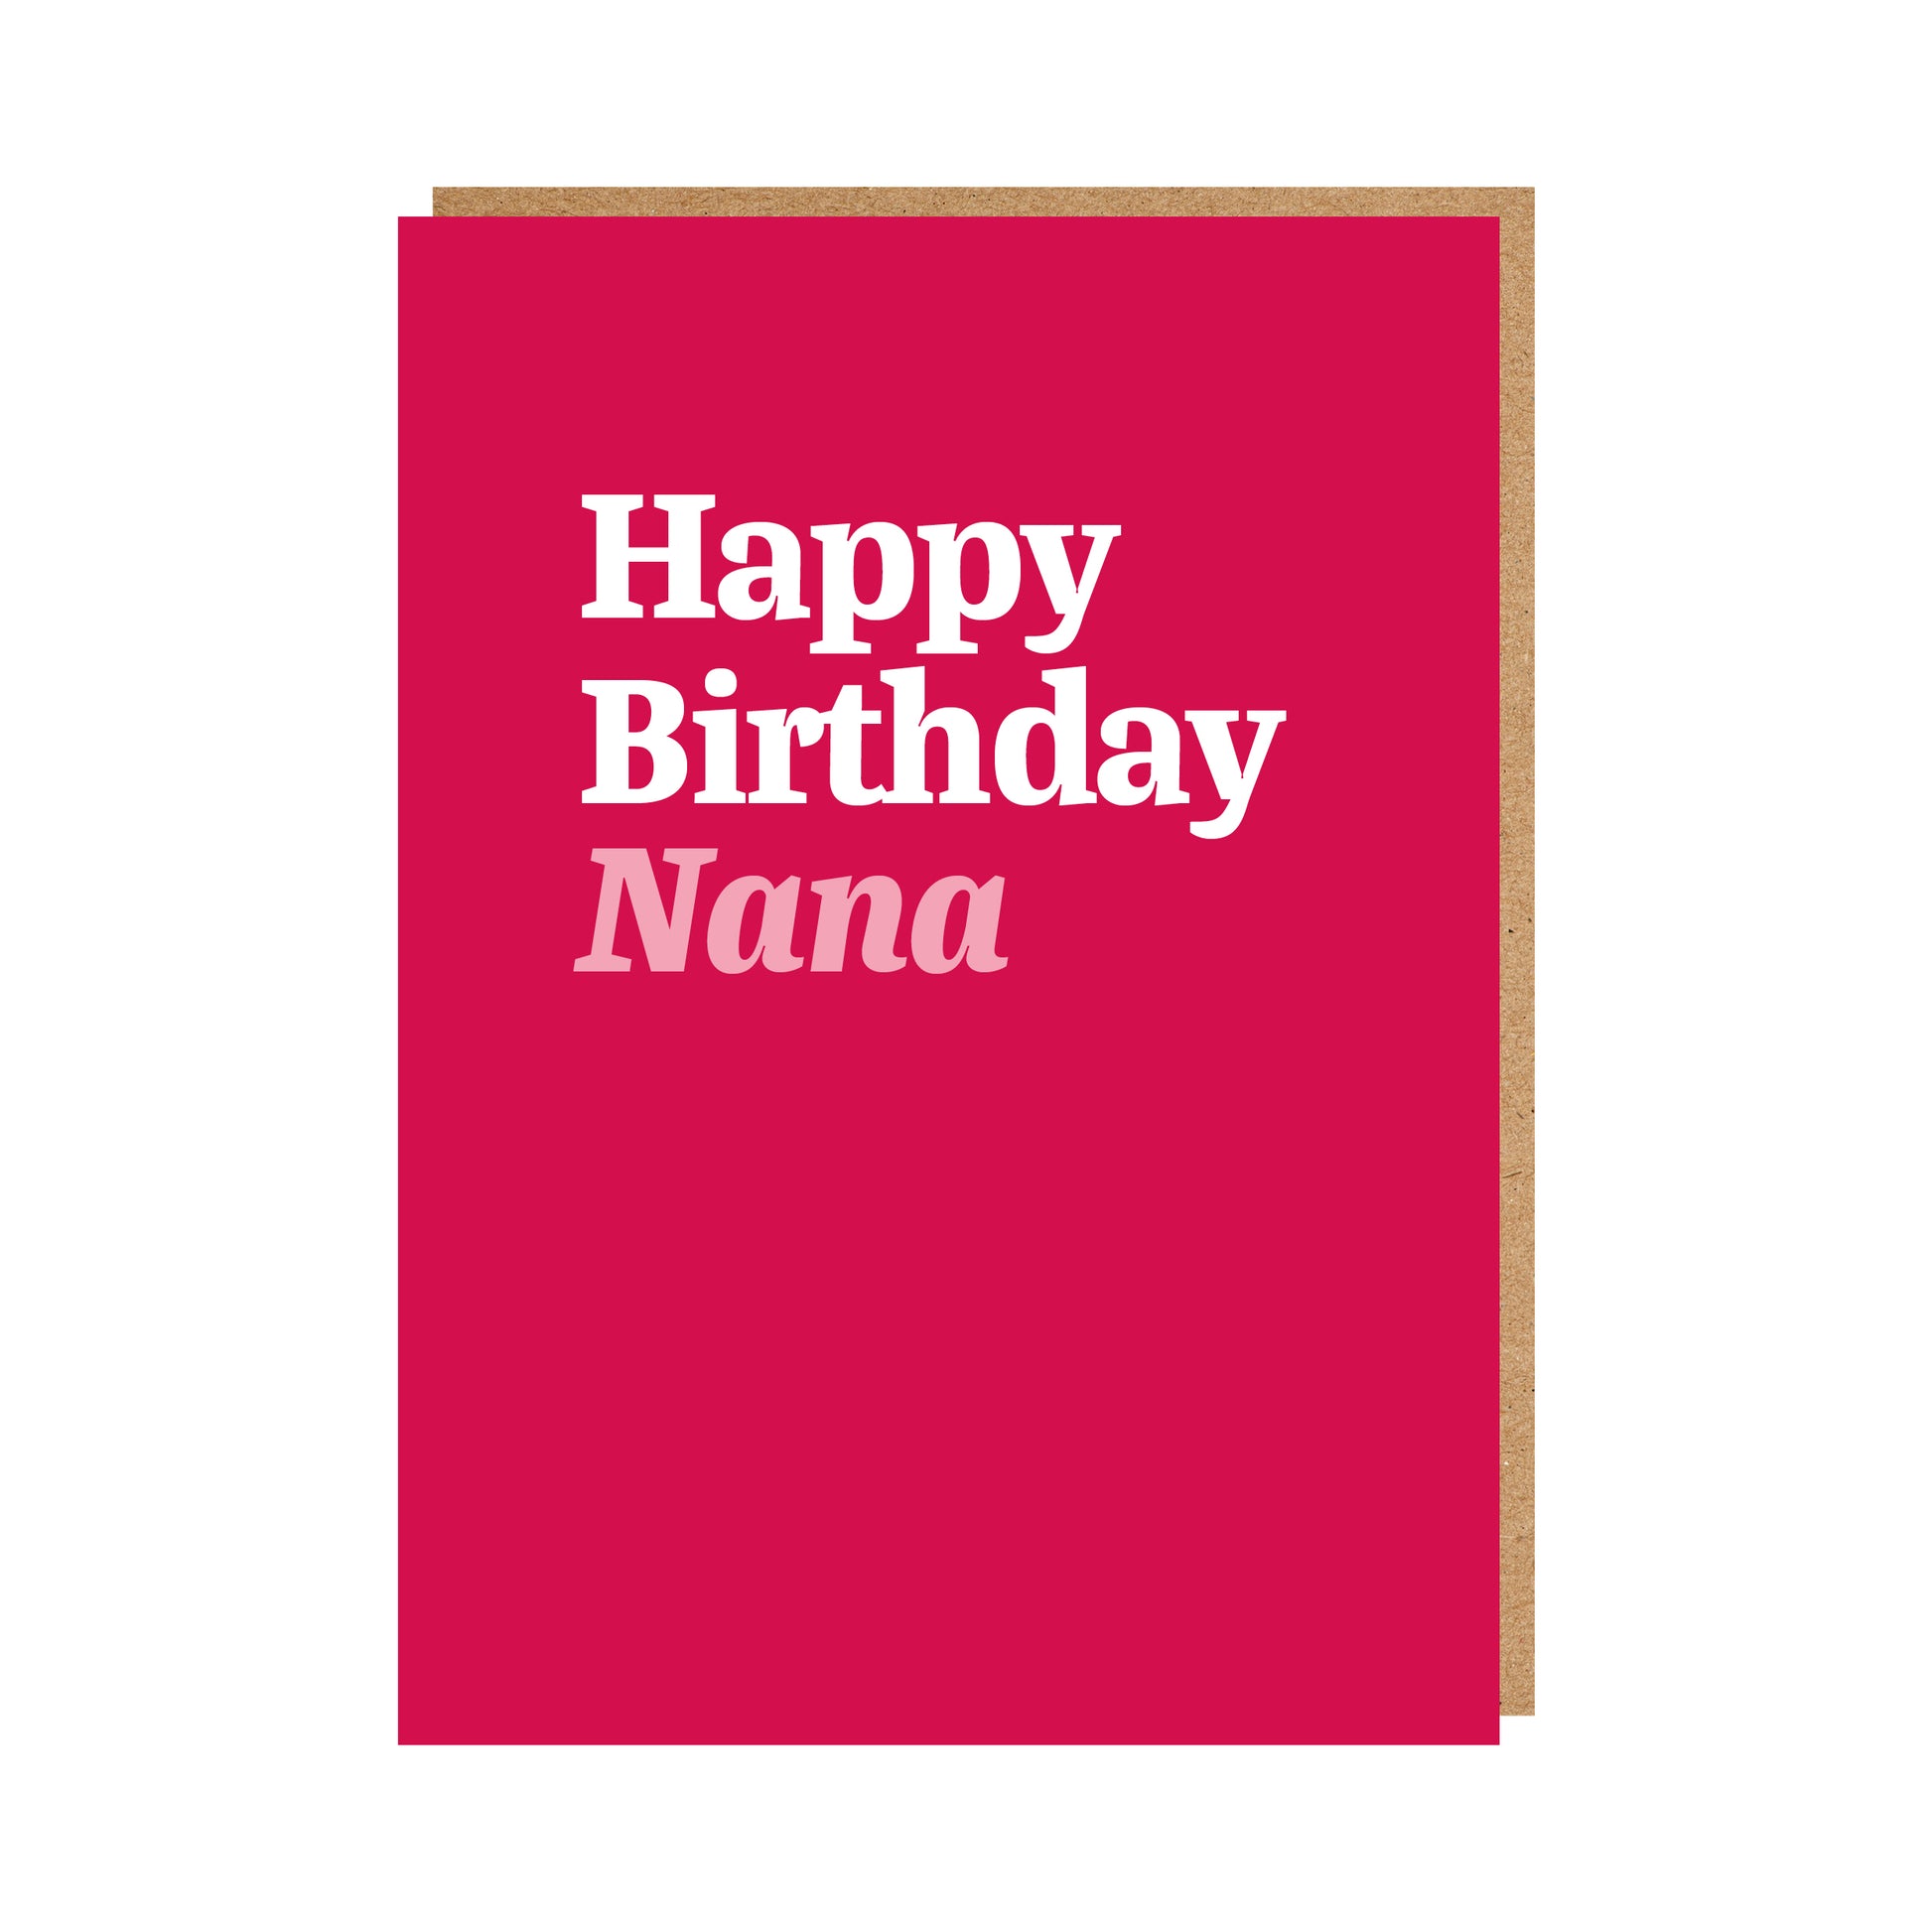 Nana Birthday Card text reads "Happy Birthday Nana"